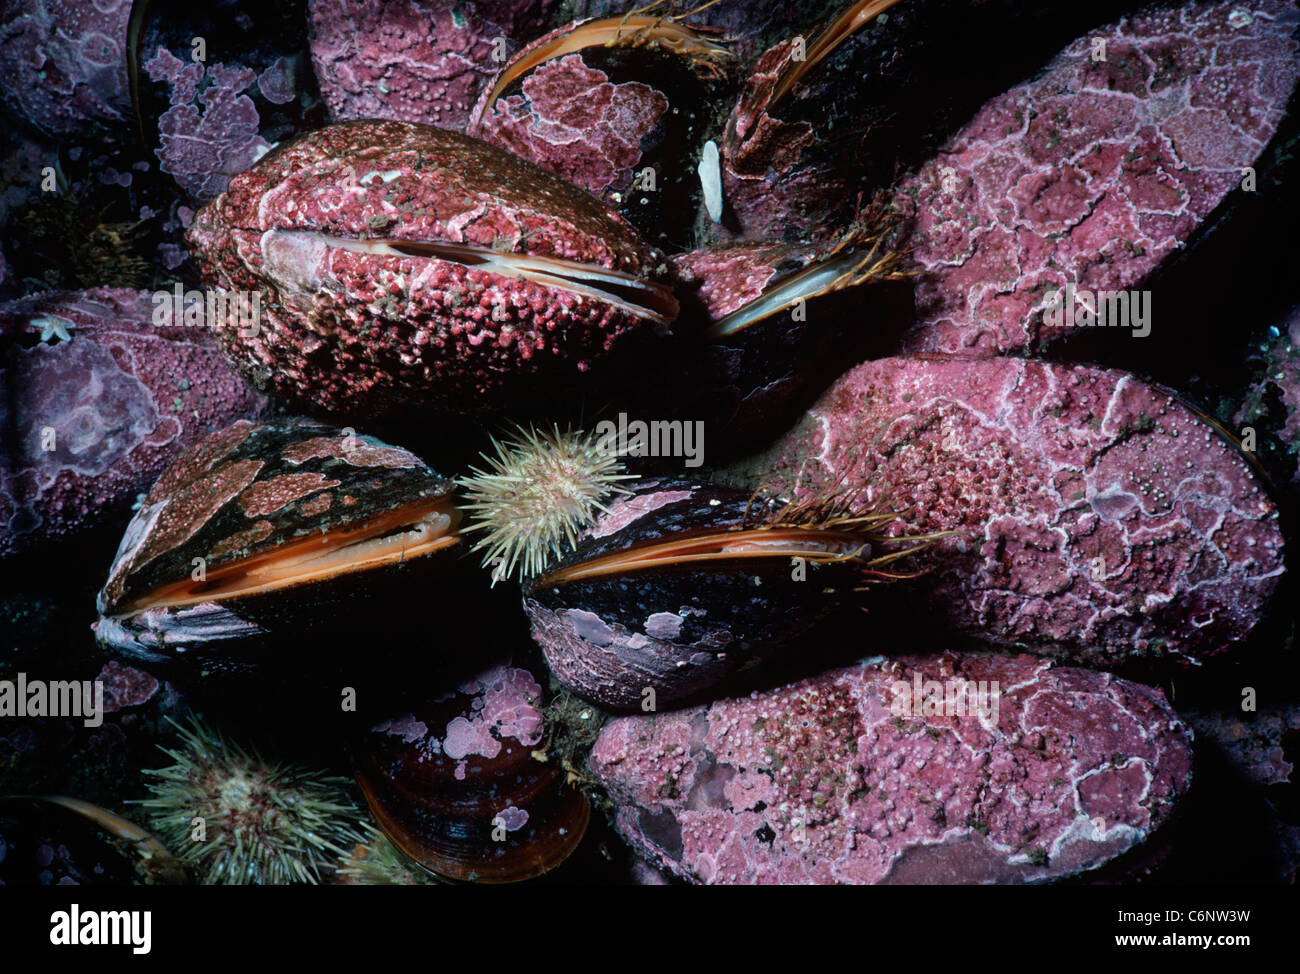 Pferd-Muscheln (Modiolus Modiolus) verkrustet Coralline Algen Filter ernähren sich von Plankton. Neu-England, Nord-Atlantik Stockfoto